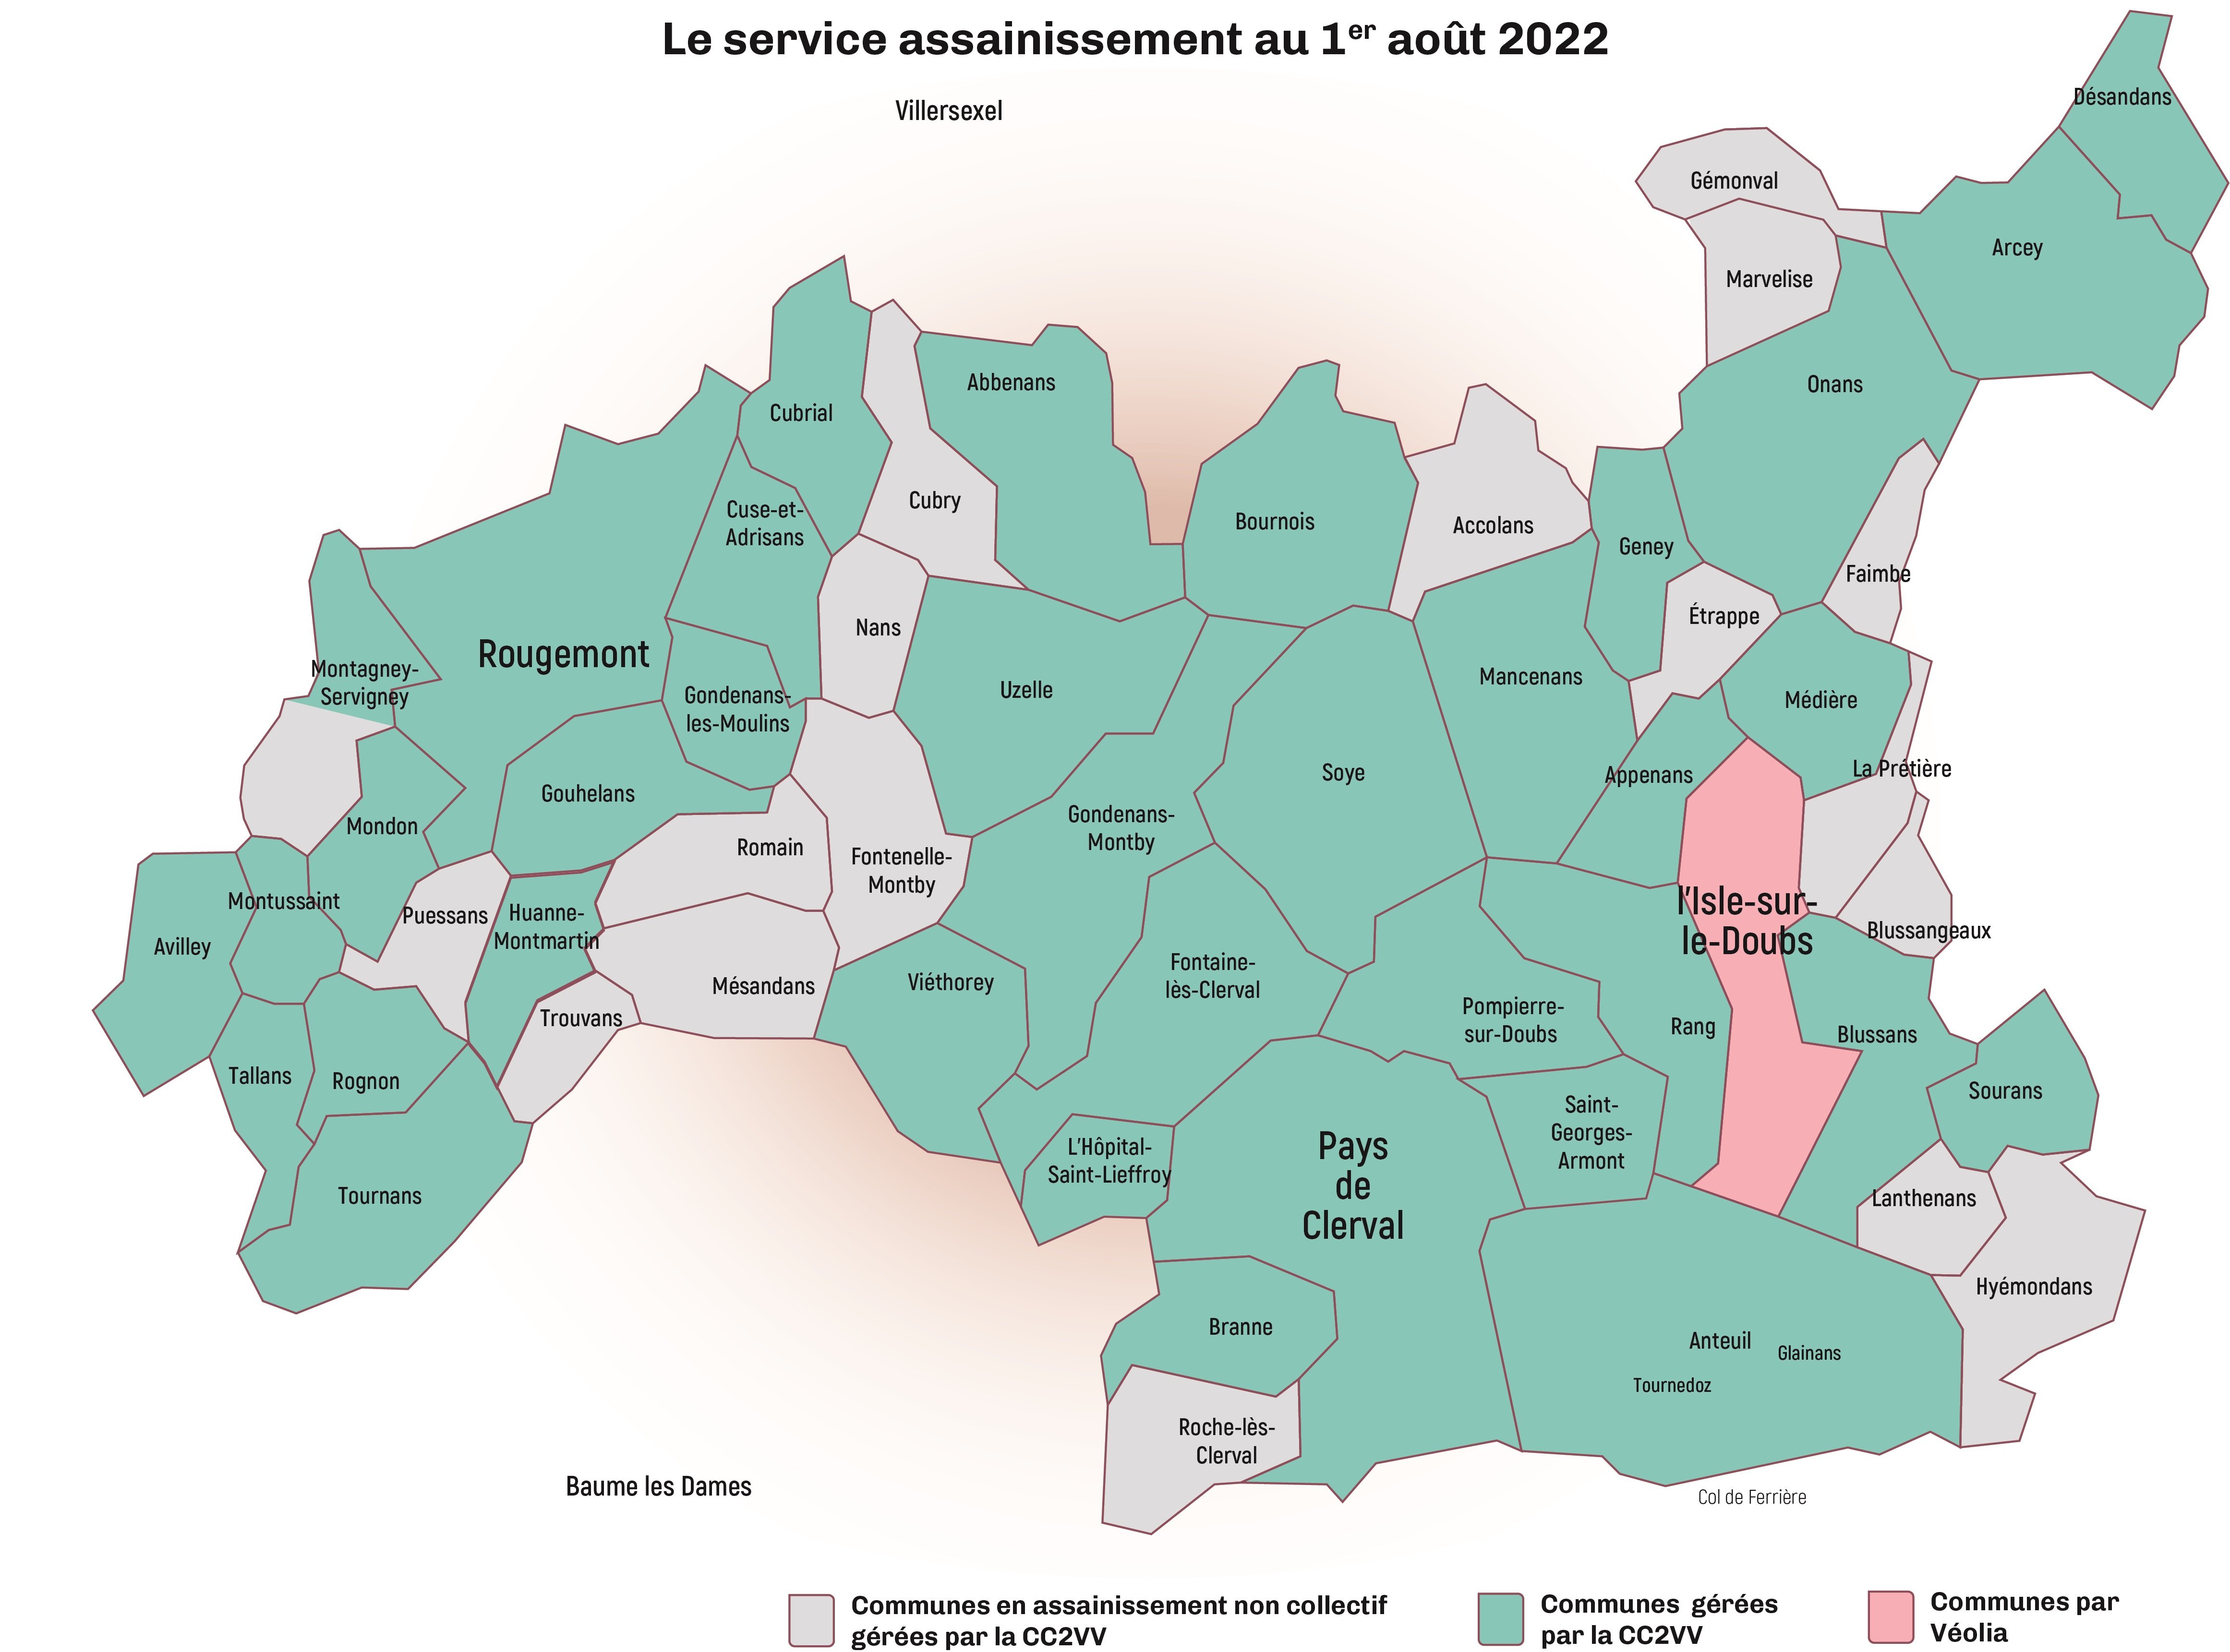 CC2VV - Anteuil. Le département du Doubs va investir 4,8 M€ pour